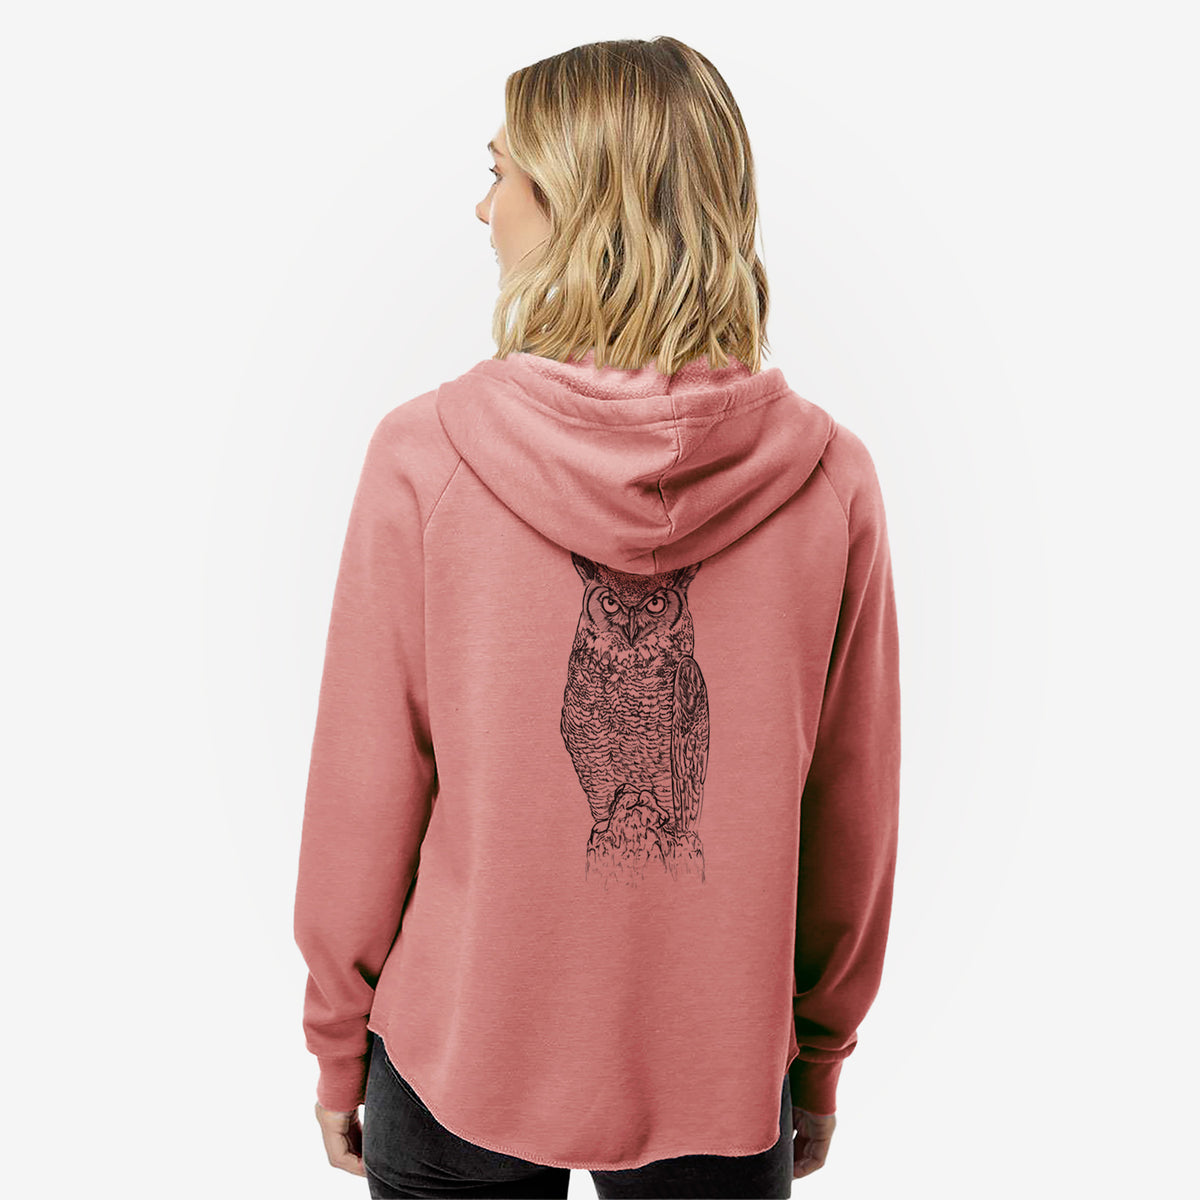 Bubo virginianus - Great Horned Owl - Women&#39;s Cali Wave Zip-Up Sweatshirt